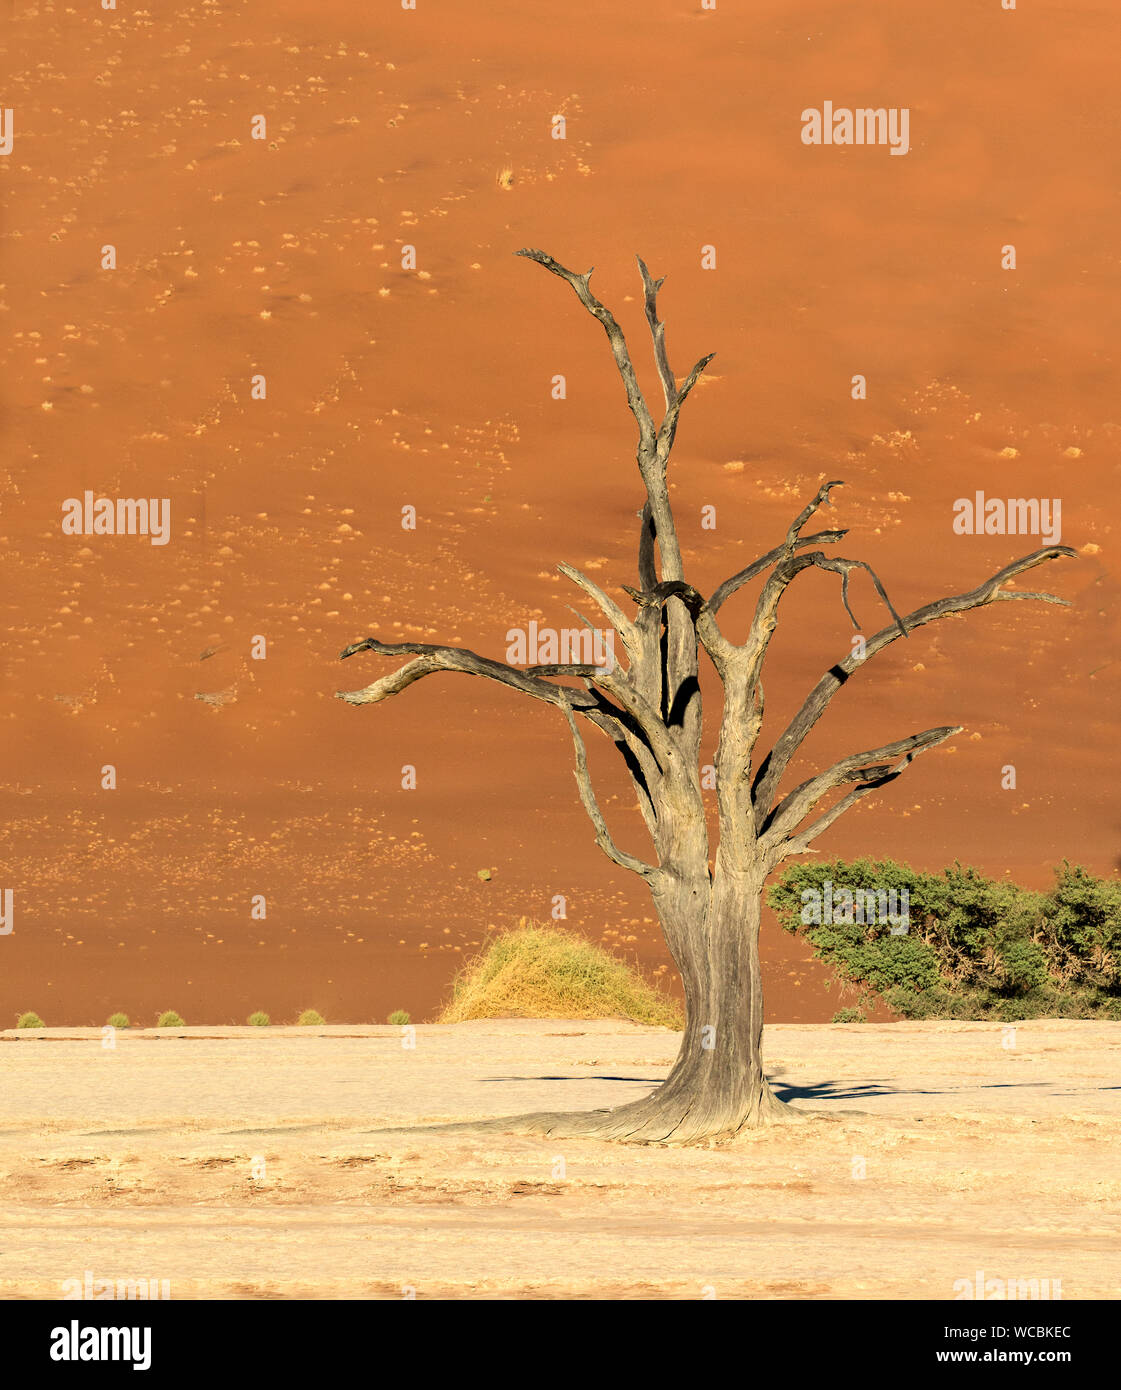 Deadvlei è la rinomata località di alberi che sono stati morti per oltre 900 anni nel deserto del Namib. Foto Stock